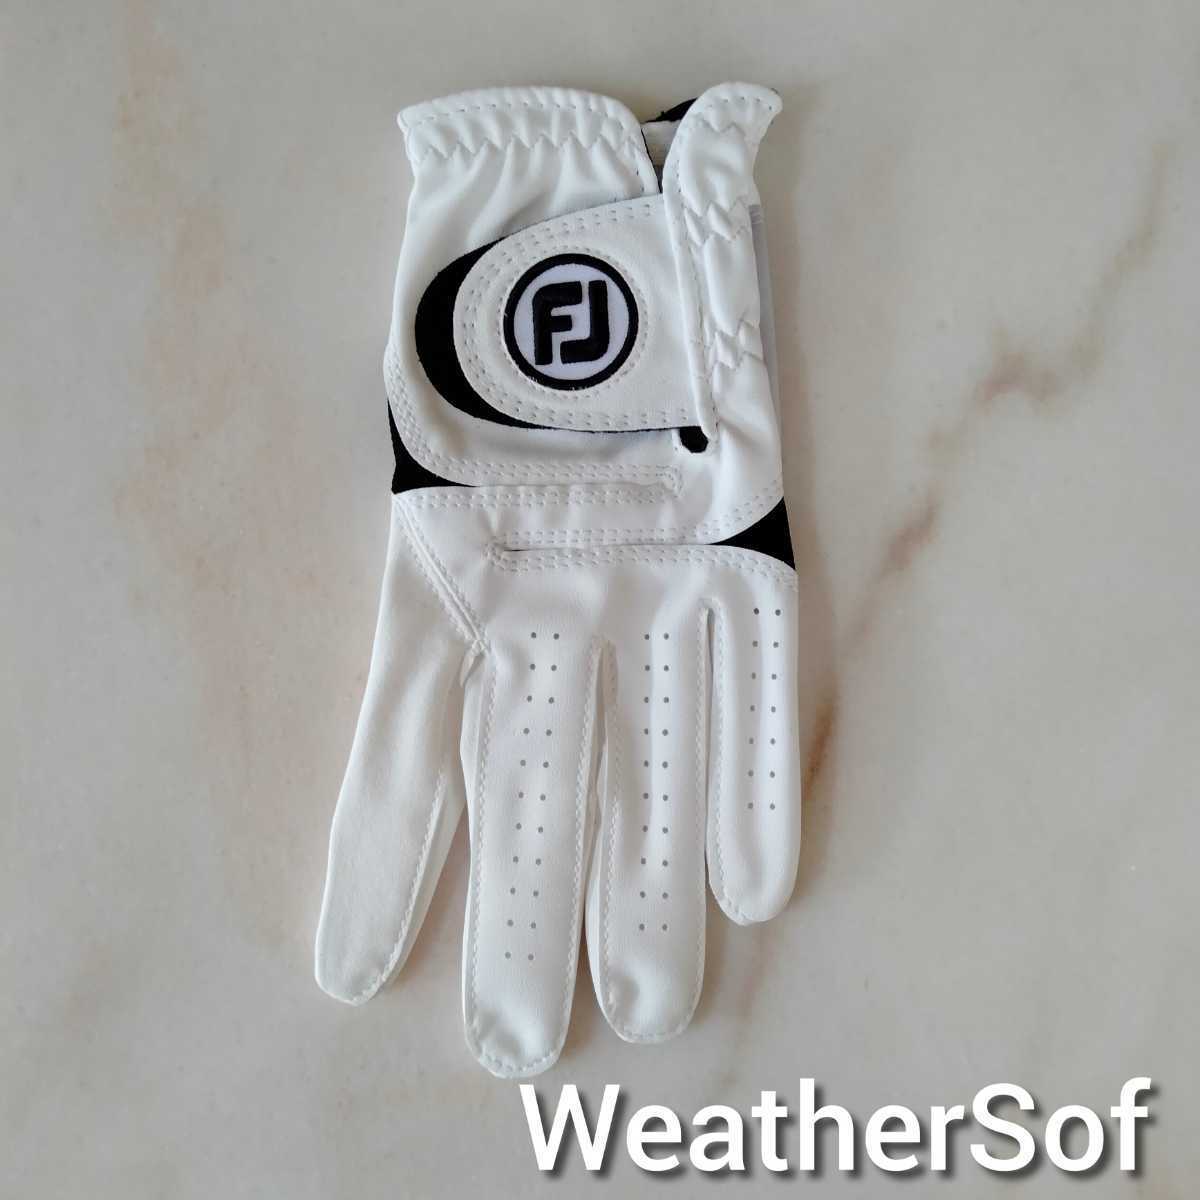 Fj weather sof23cm белый 2 шт. комплект foot Joy Golf перчатка ue The -sof Dunlop новый товар не использовался анонимность распределение бесплатная доставка отправка 